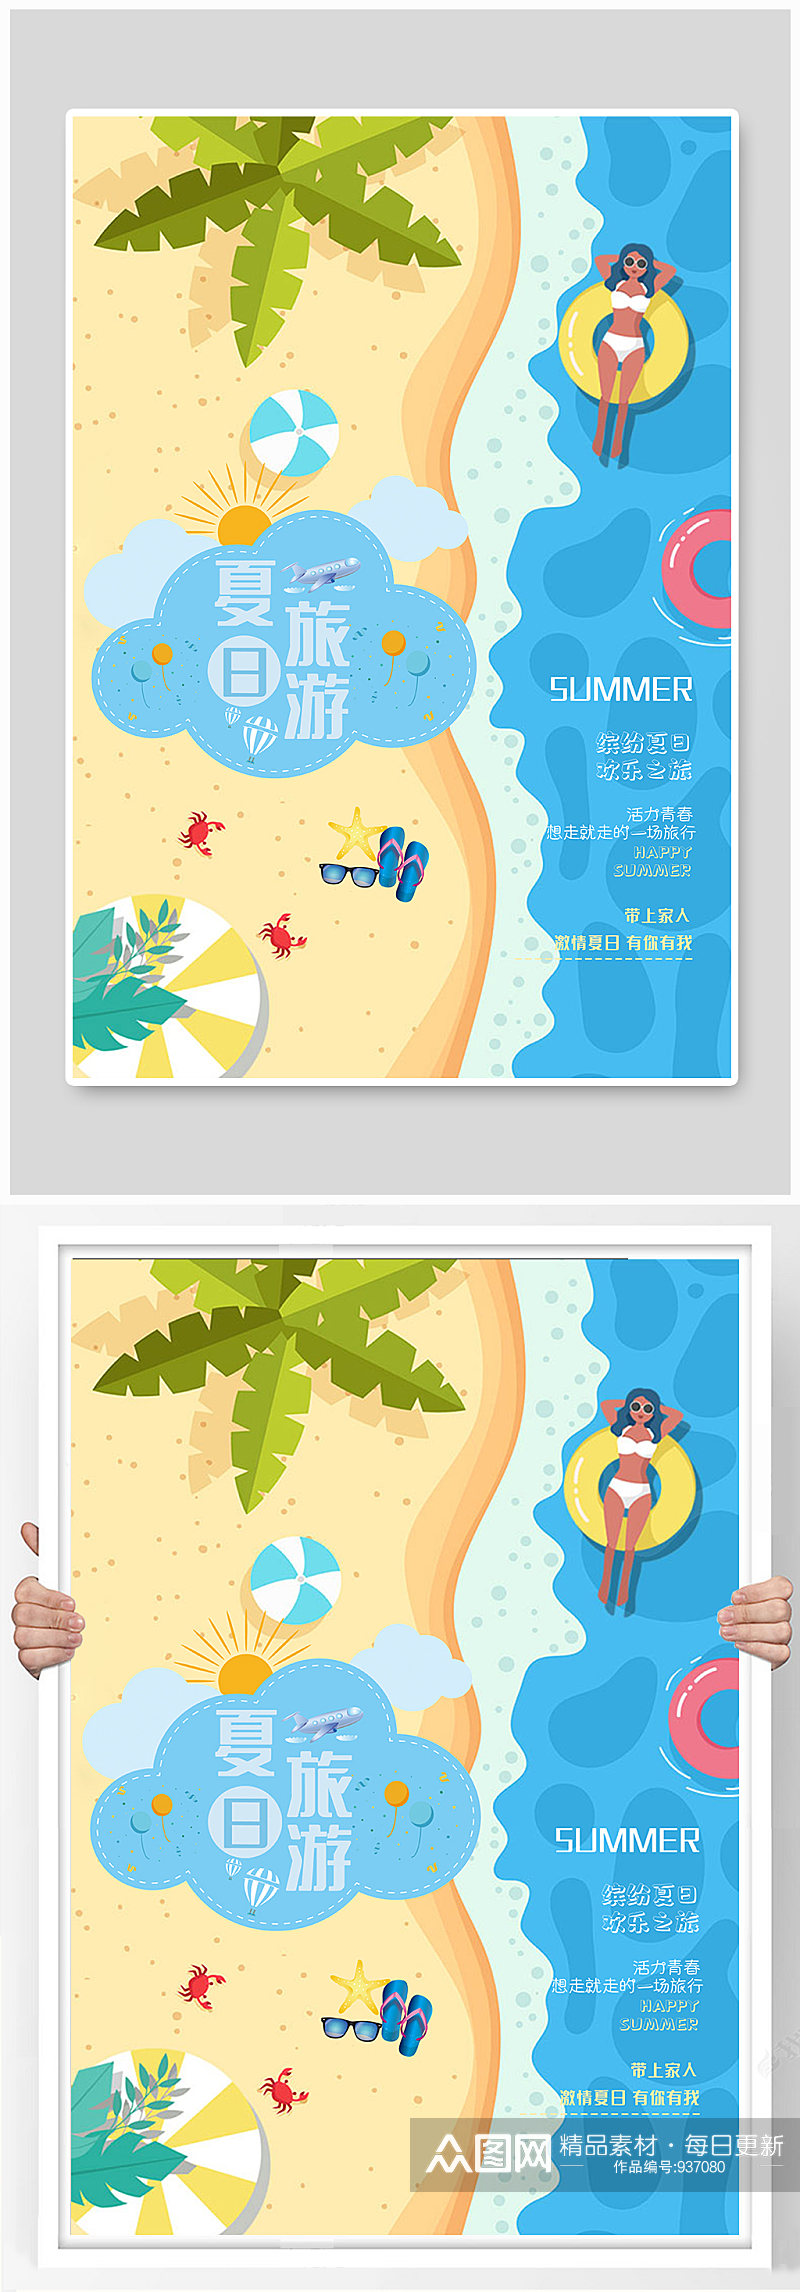 夏季海边沙滩游泳海报素材